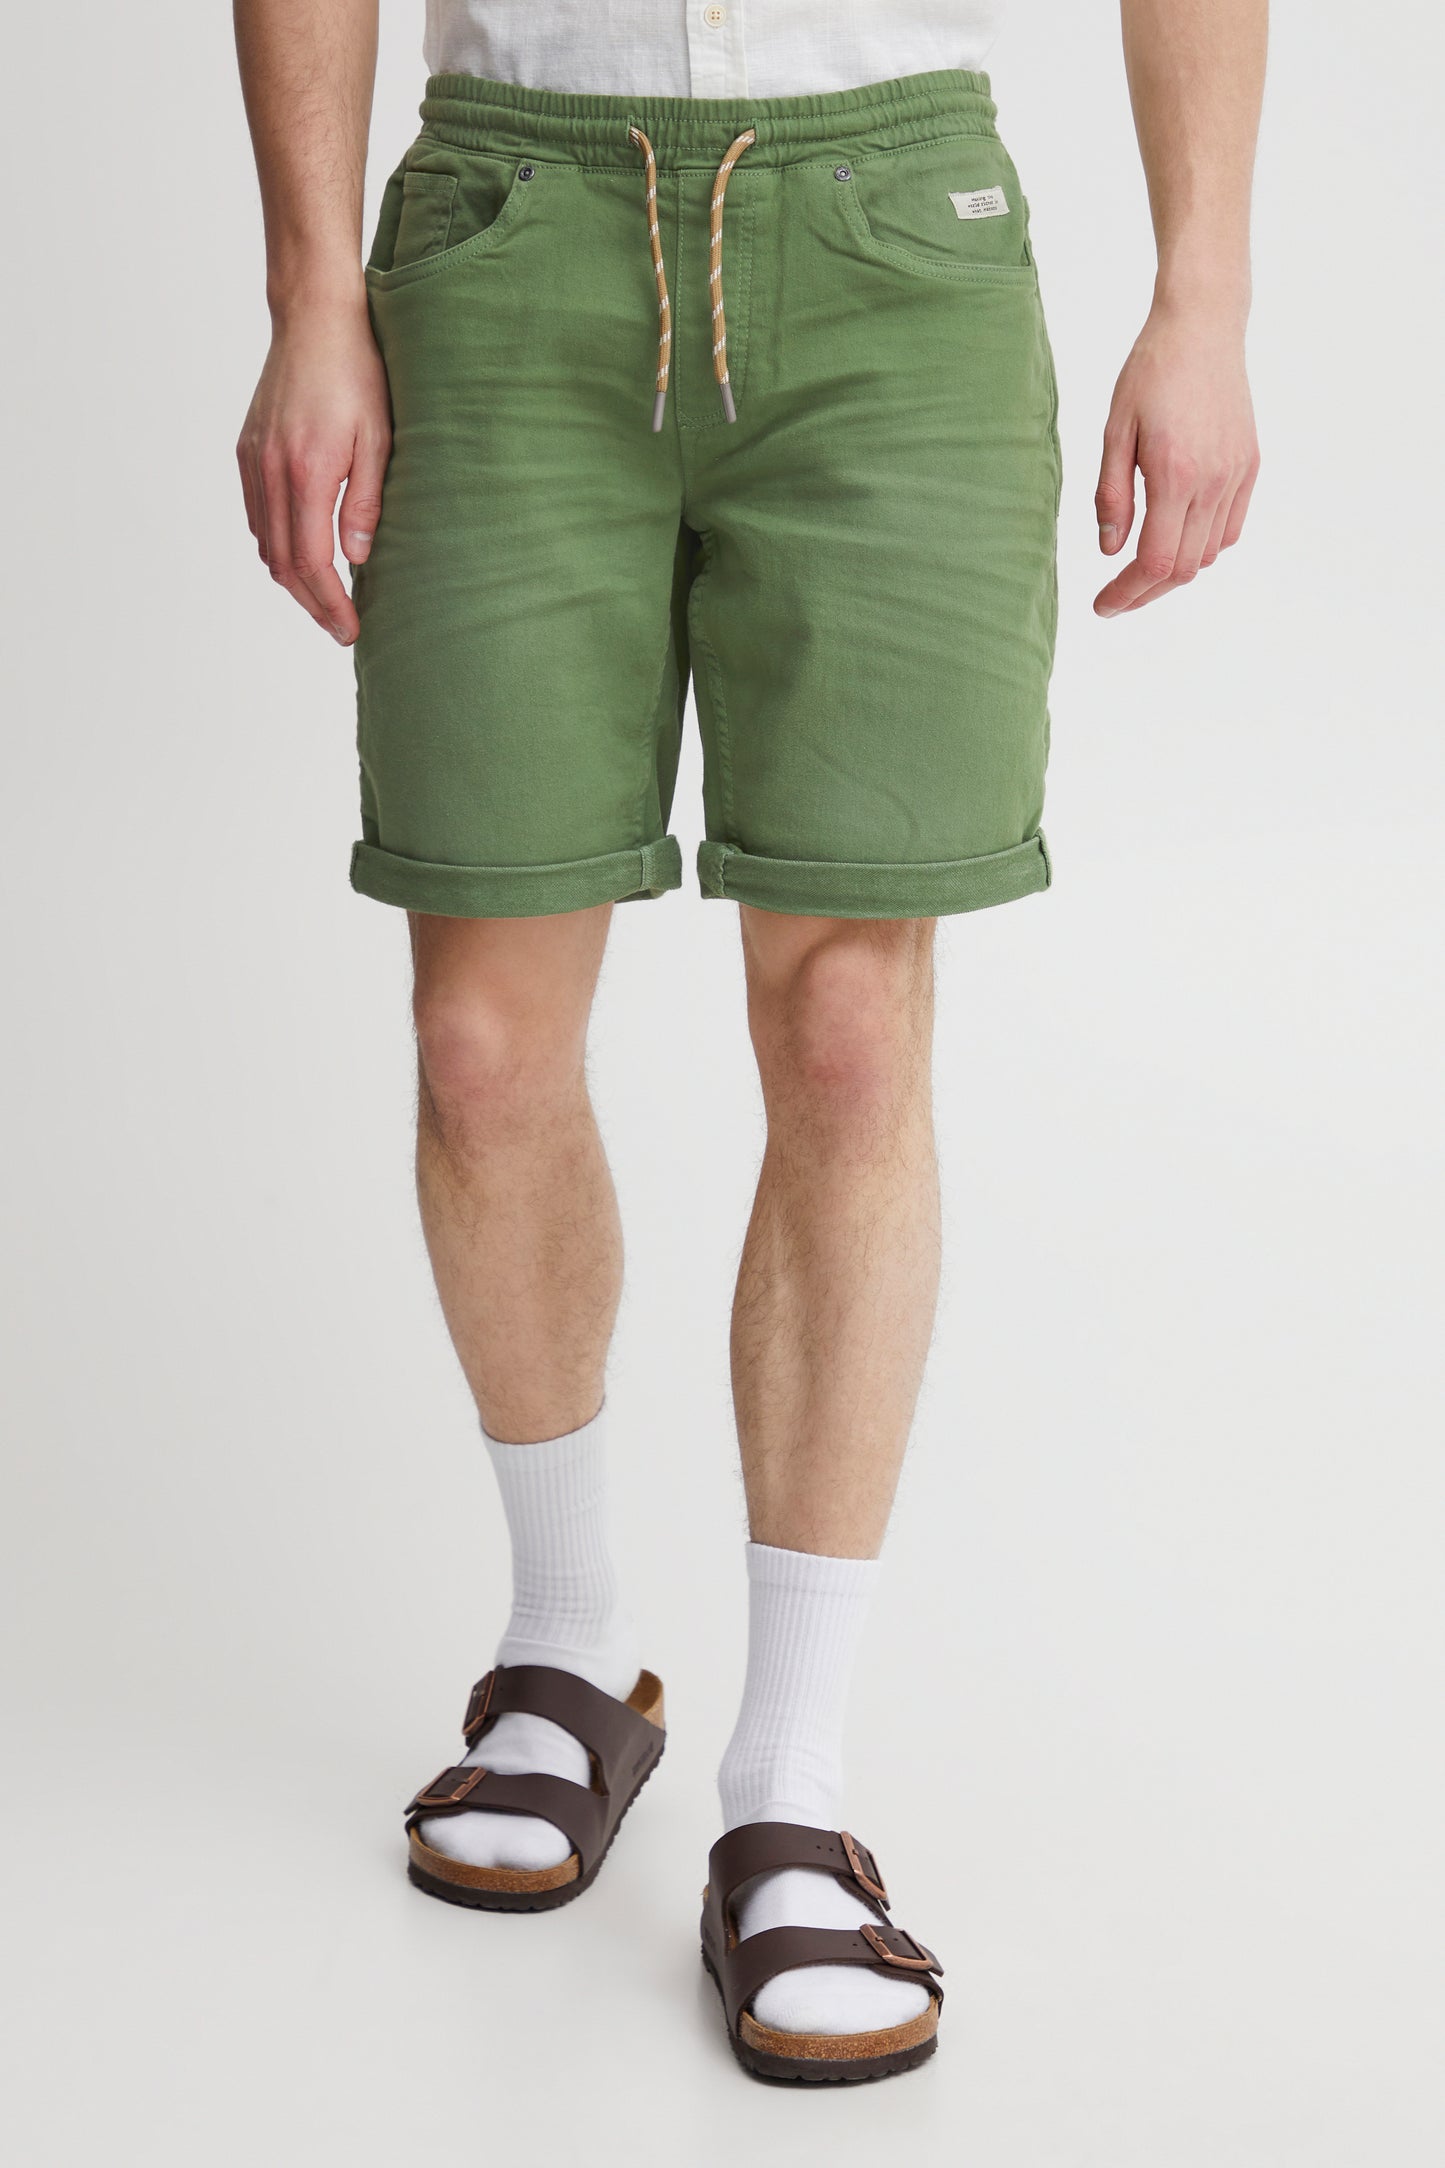 Blend - He Jogg Denim Shorts | Dill